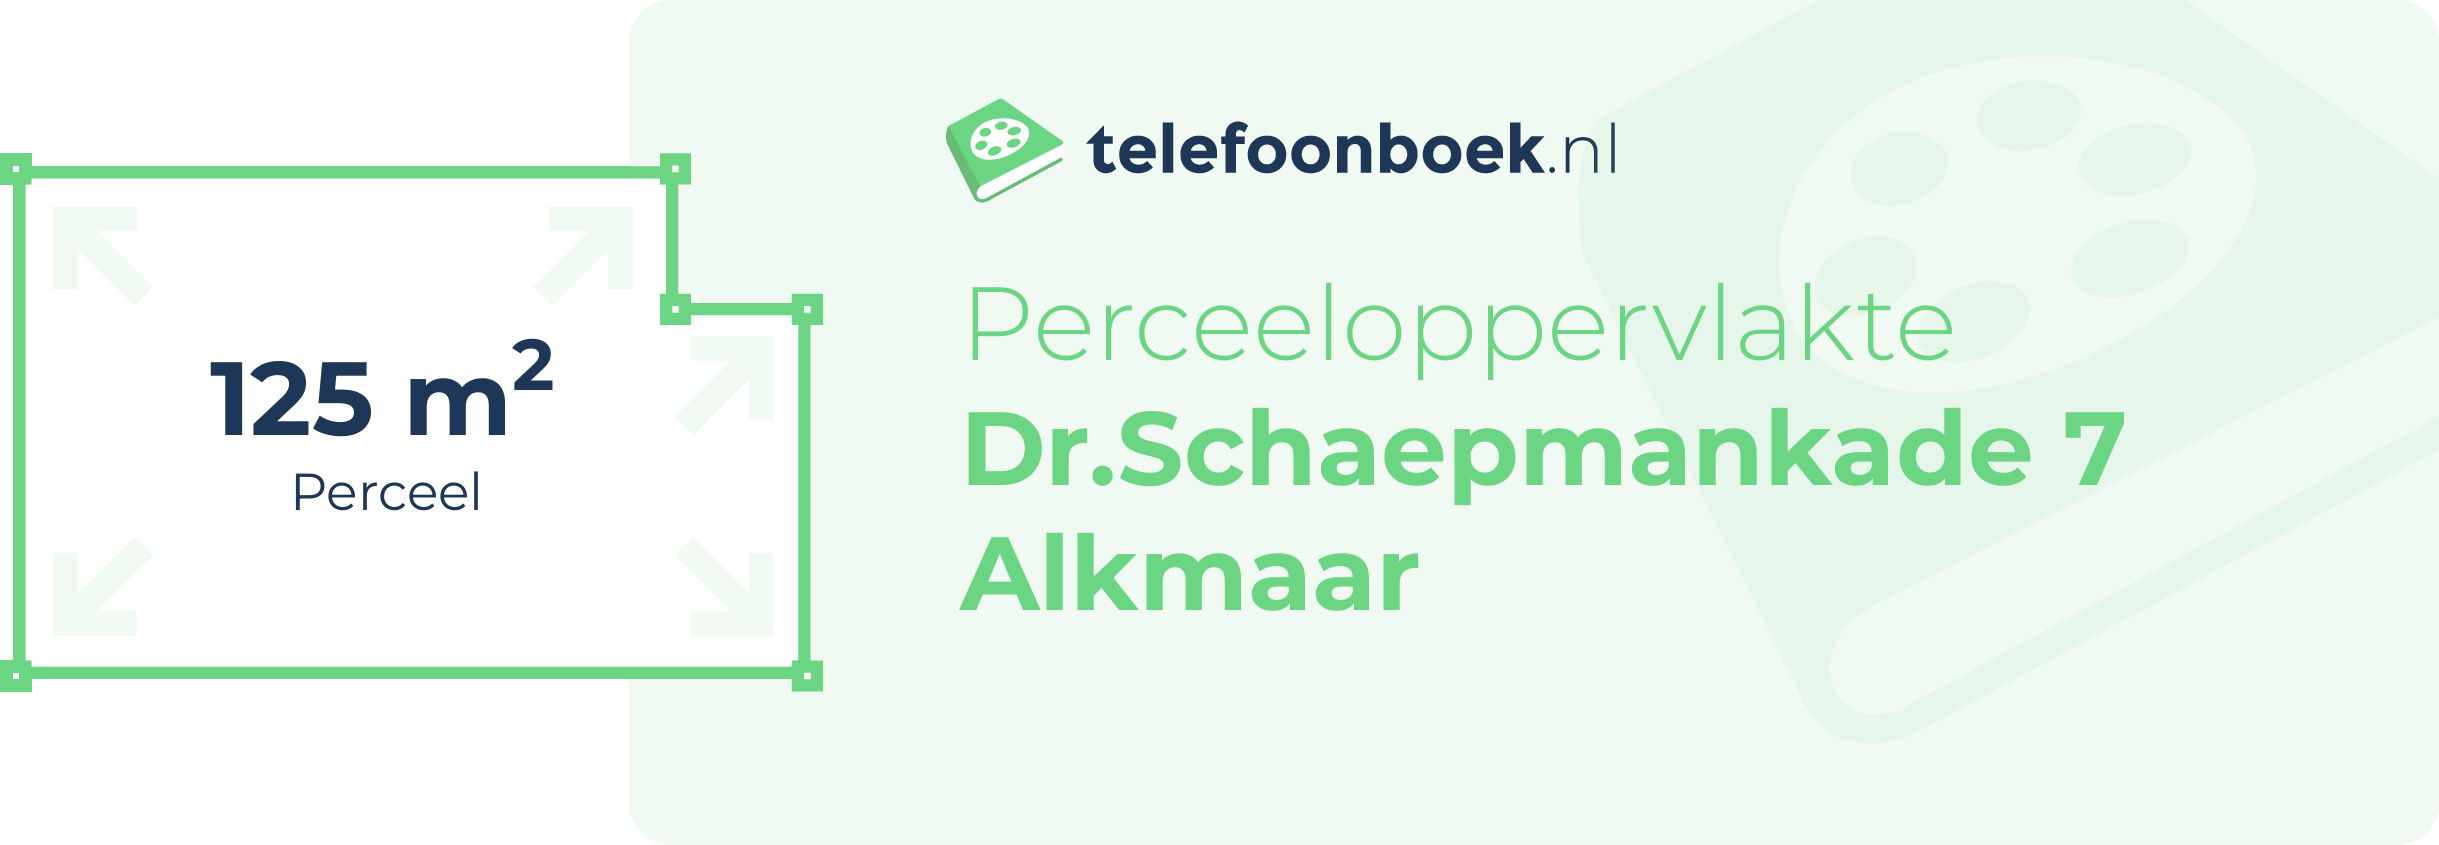 Perceeloppervlakte Dr.Schaepmankade 7 Alkmaar